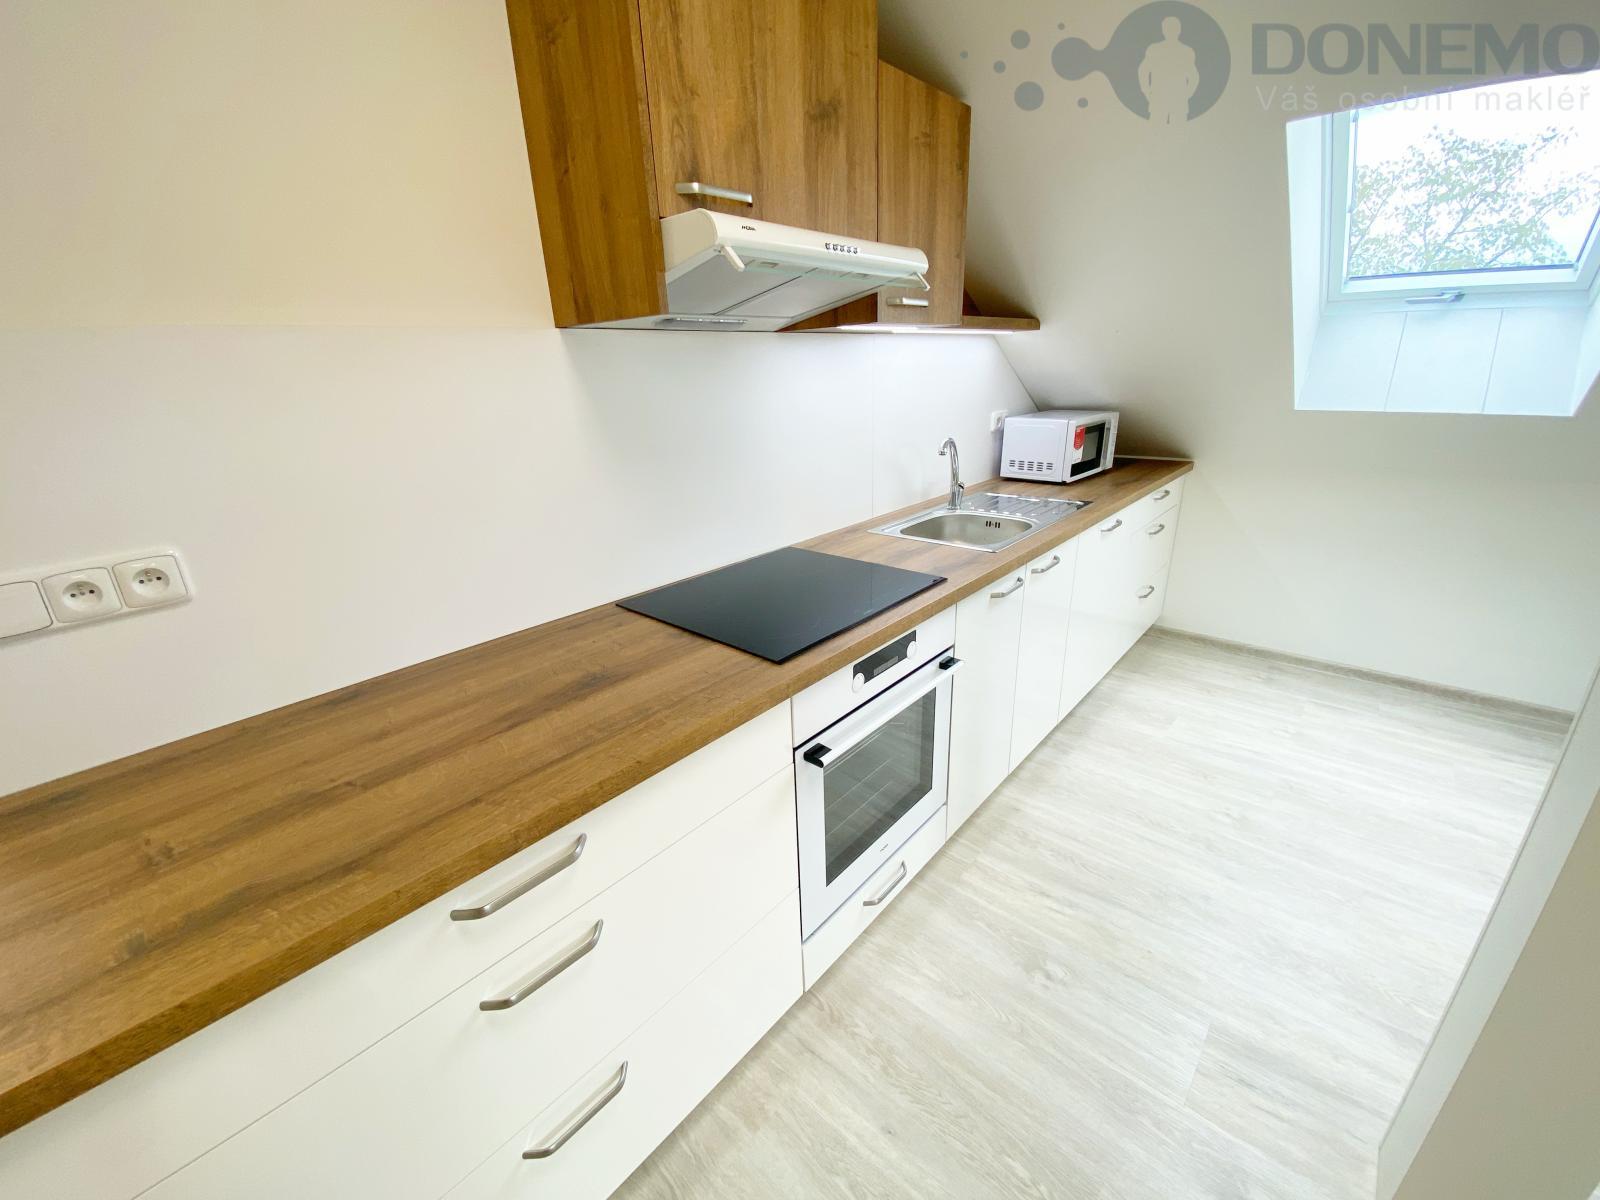 Nabízíme krásné podkrovní bydlení o dispozici 3+kk, 84,7 m2 v novostavbě domu v obci Moravská Hůzová